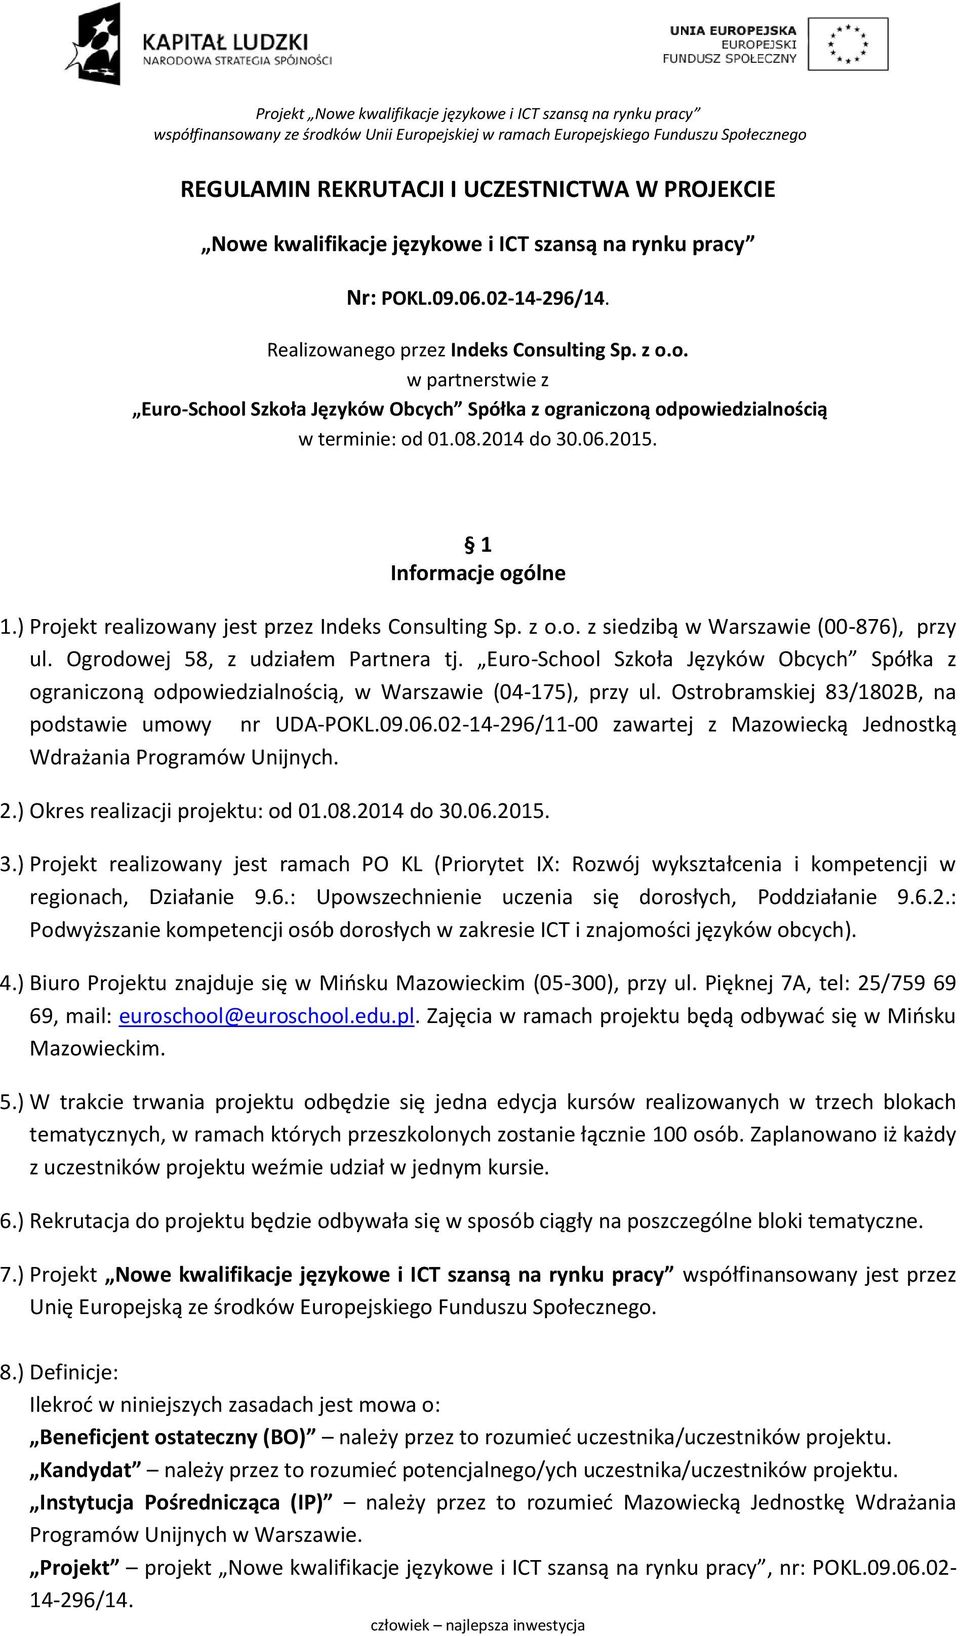 Euro-School Szkoła Języków Obcych Spółka z ograniczoną odpowiedzialnością, w Warszawie (04-175), przy ul. Ostrobramskiej 83/1802B, na podstawie umowy nr UDA-POKL.09.06.